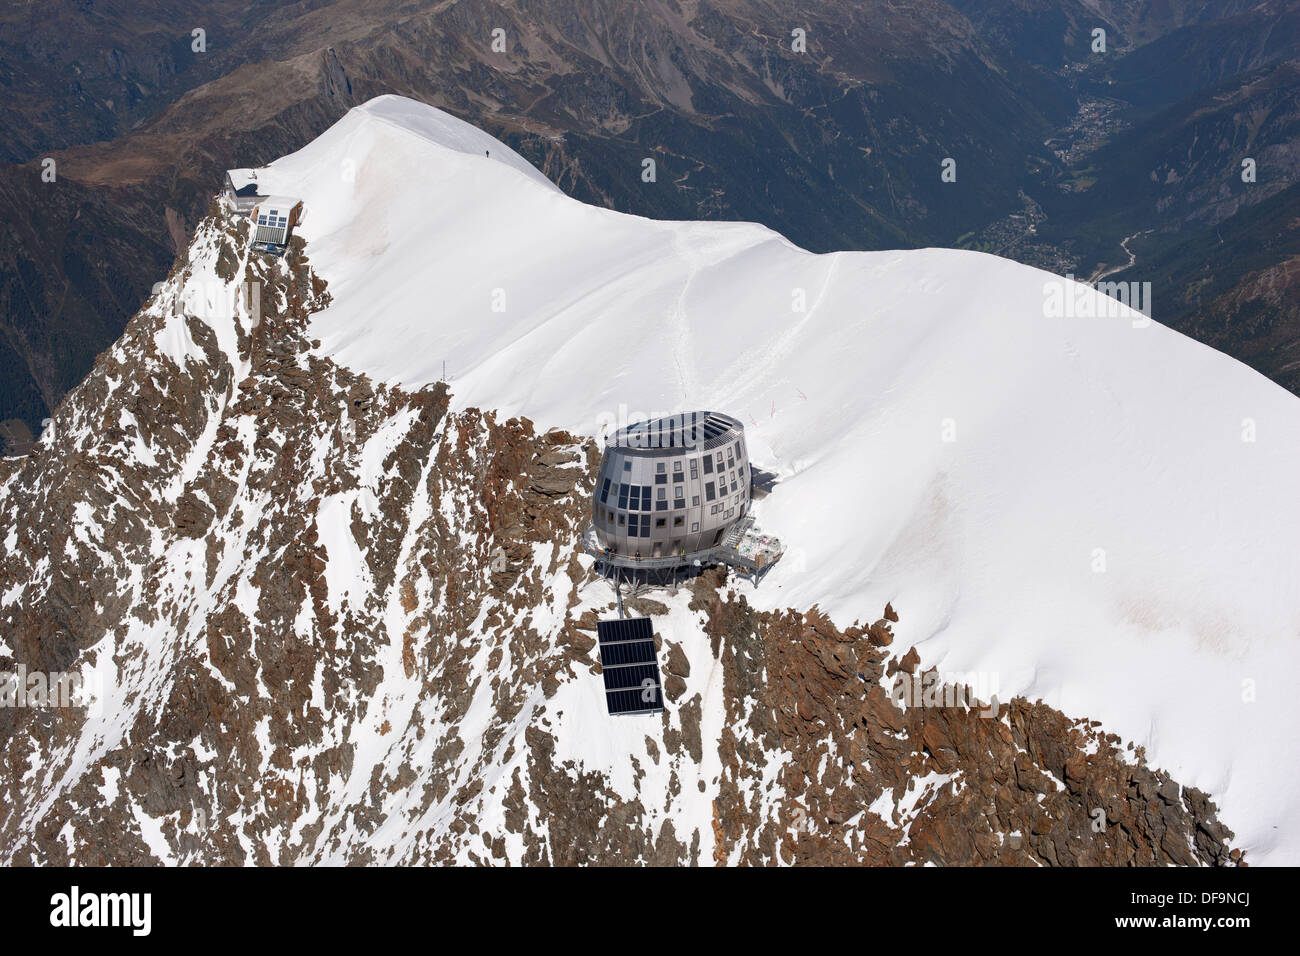 VUE AÉRIENNE.Aiguille du Goûter (altitude: 3863m) avec la nouvelle cabane de montagne au bord de la falaise.Saint-Gervais, Auvergne-Rhône-Alpes, France. Banque D'Images